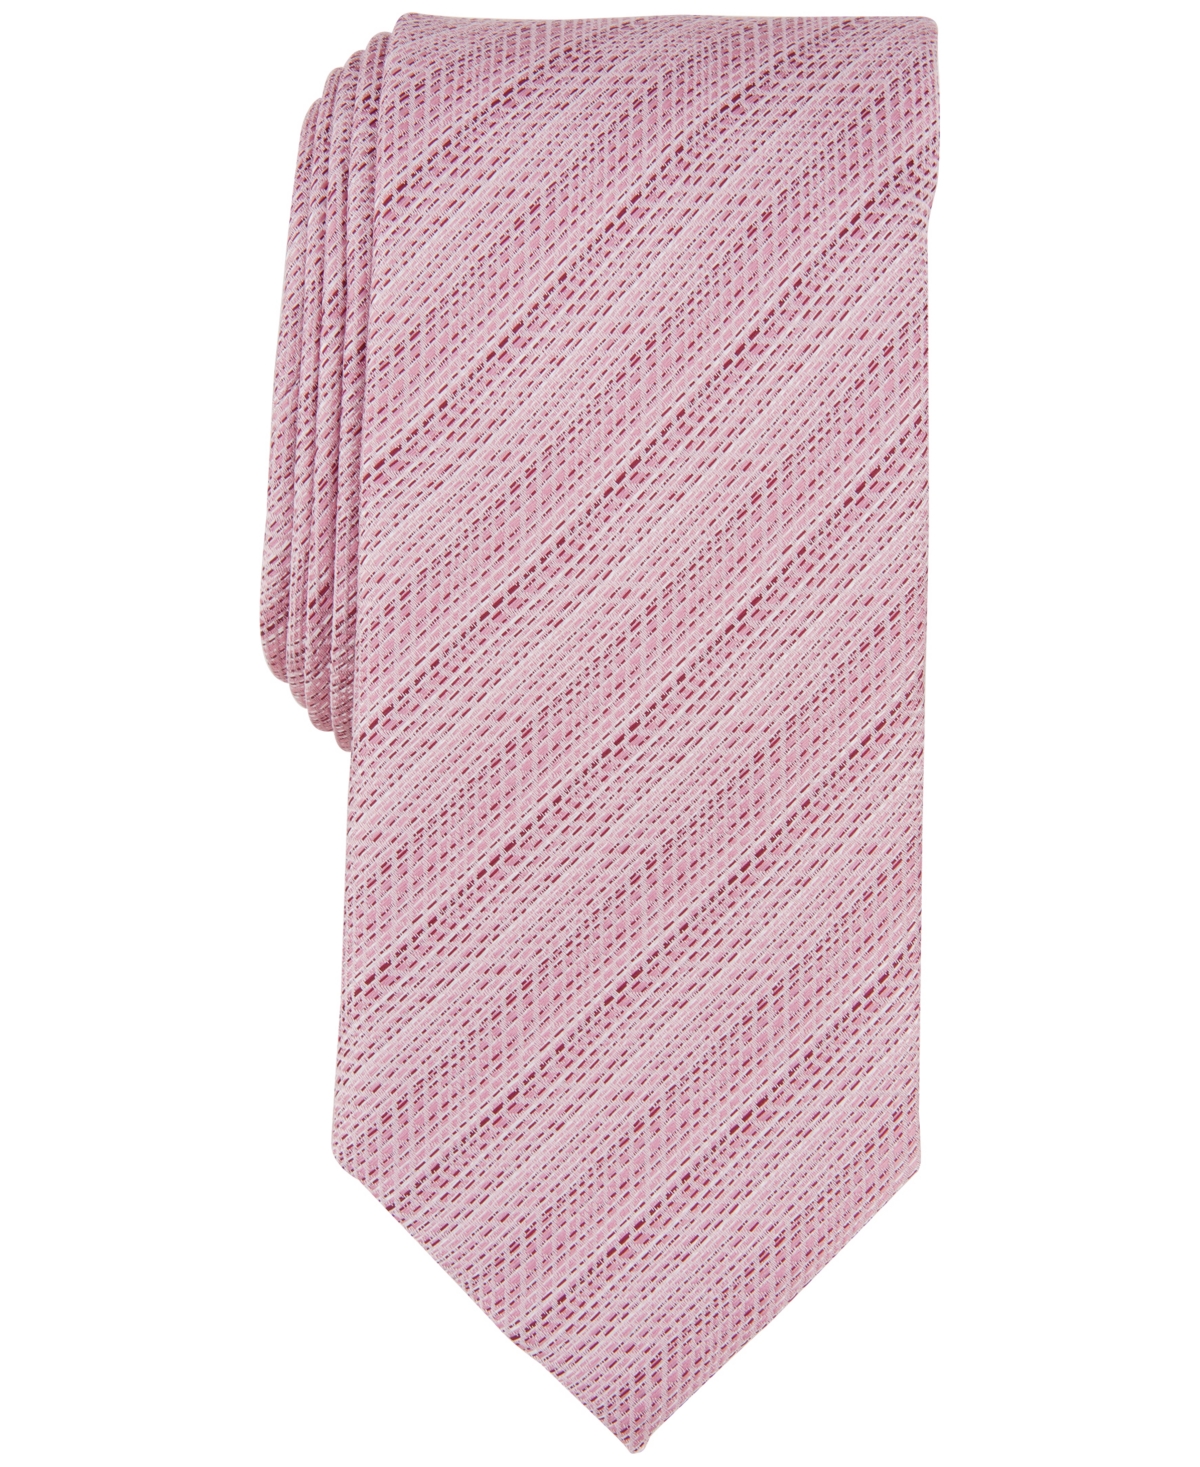 Men's Hewitt Textured Solid Tie - Pink